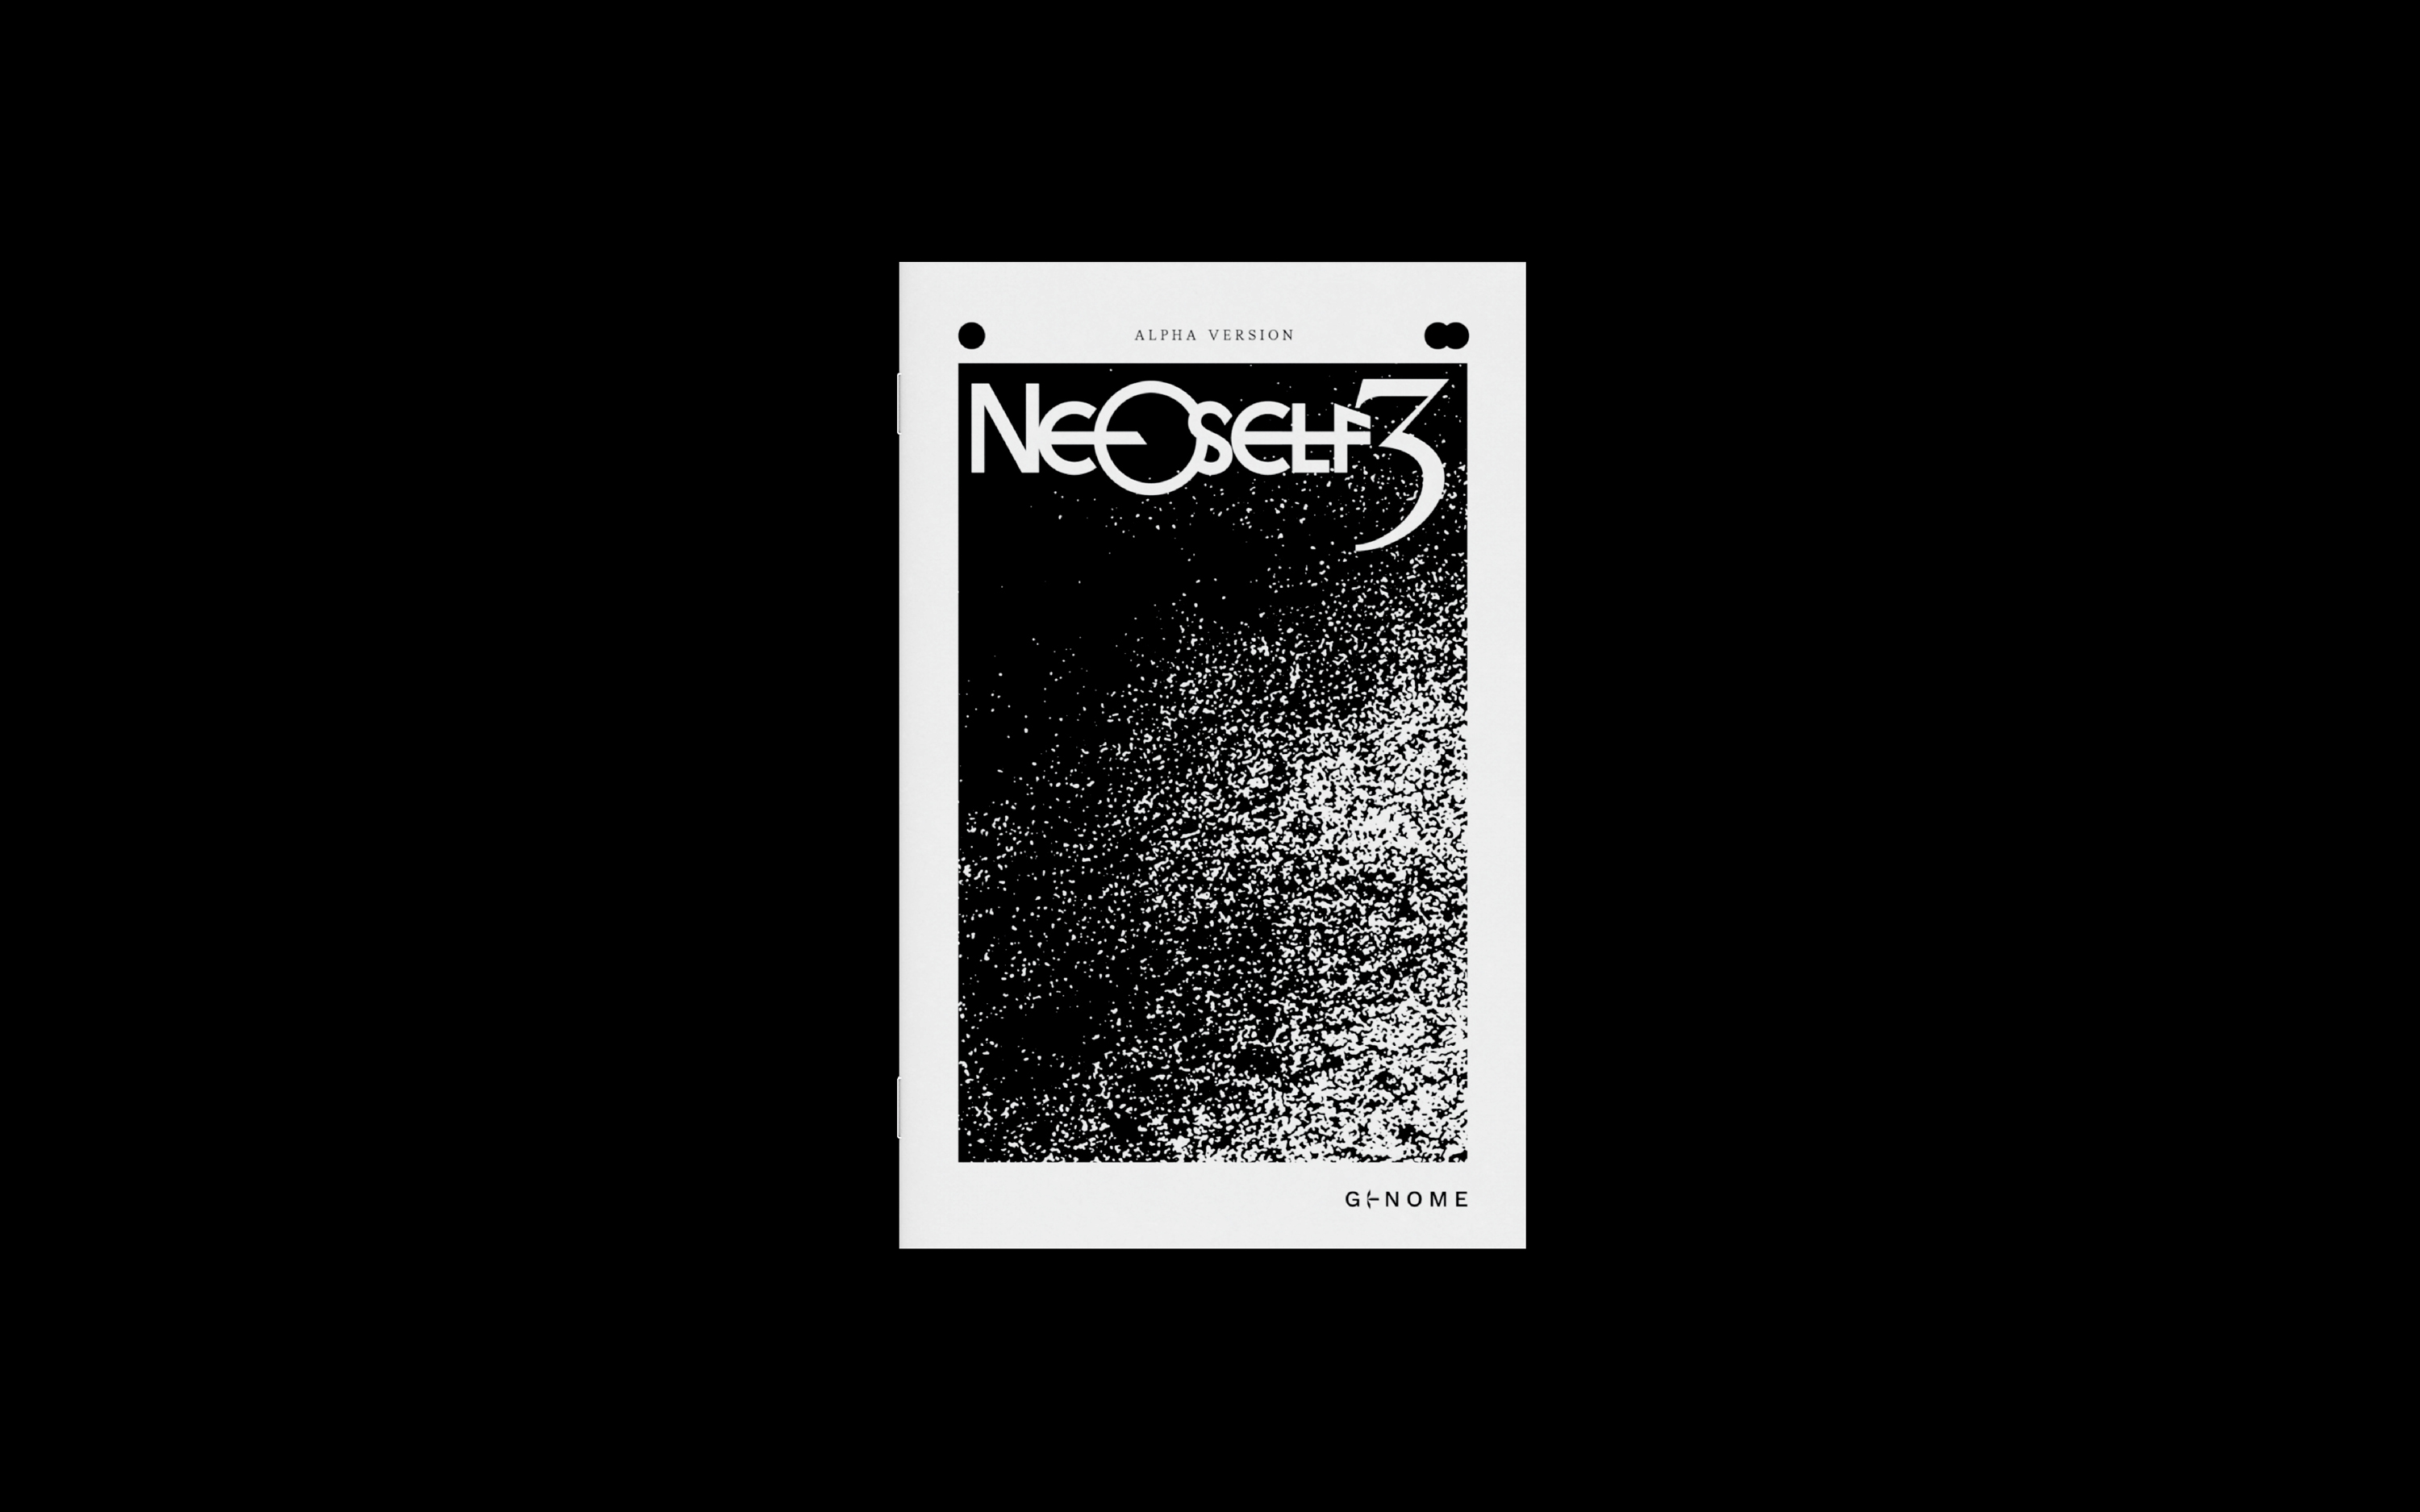 NeoSelf 3